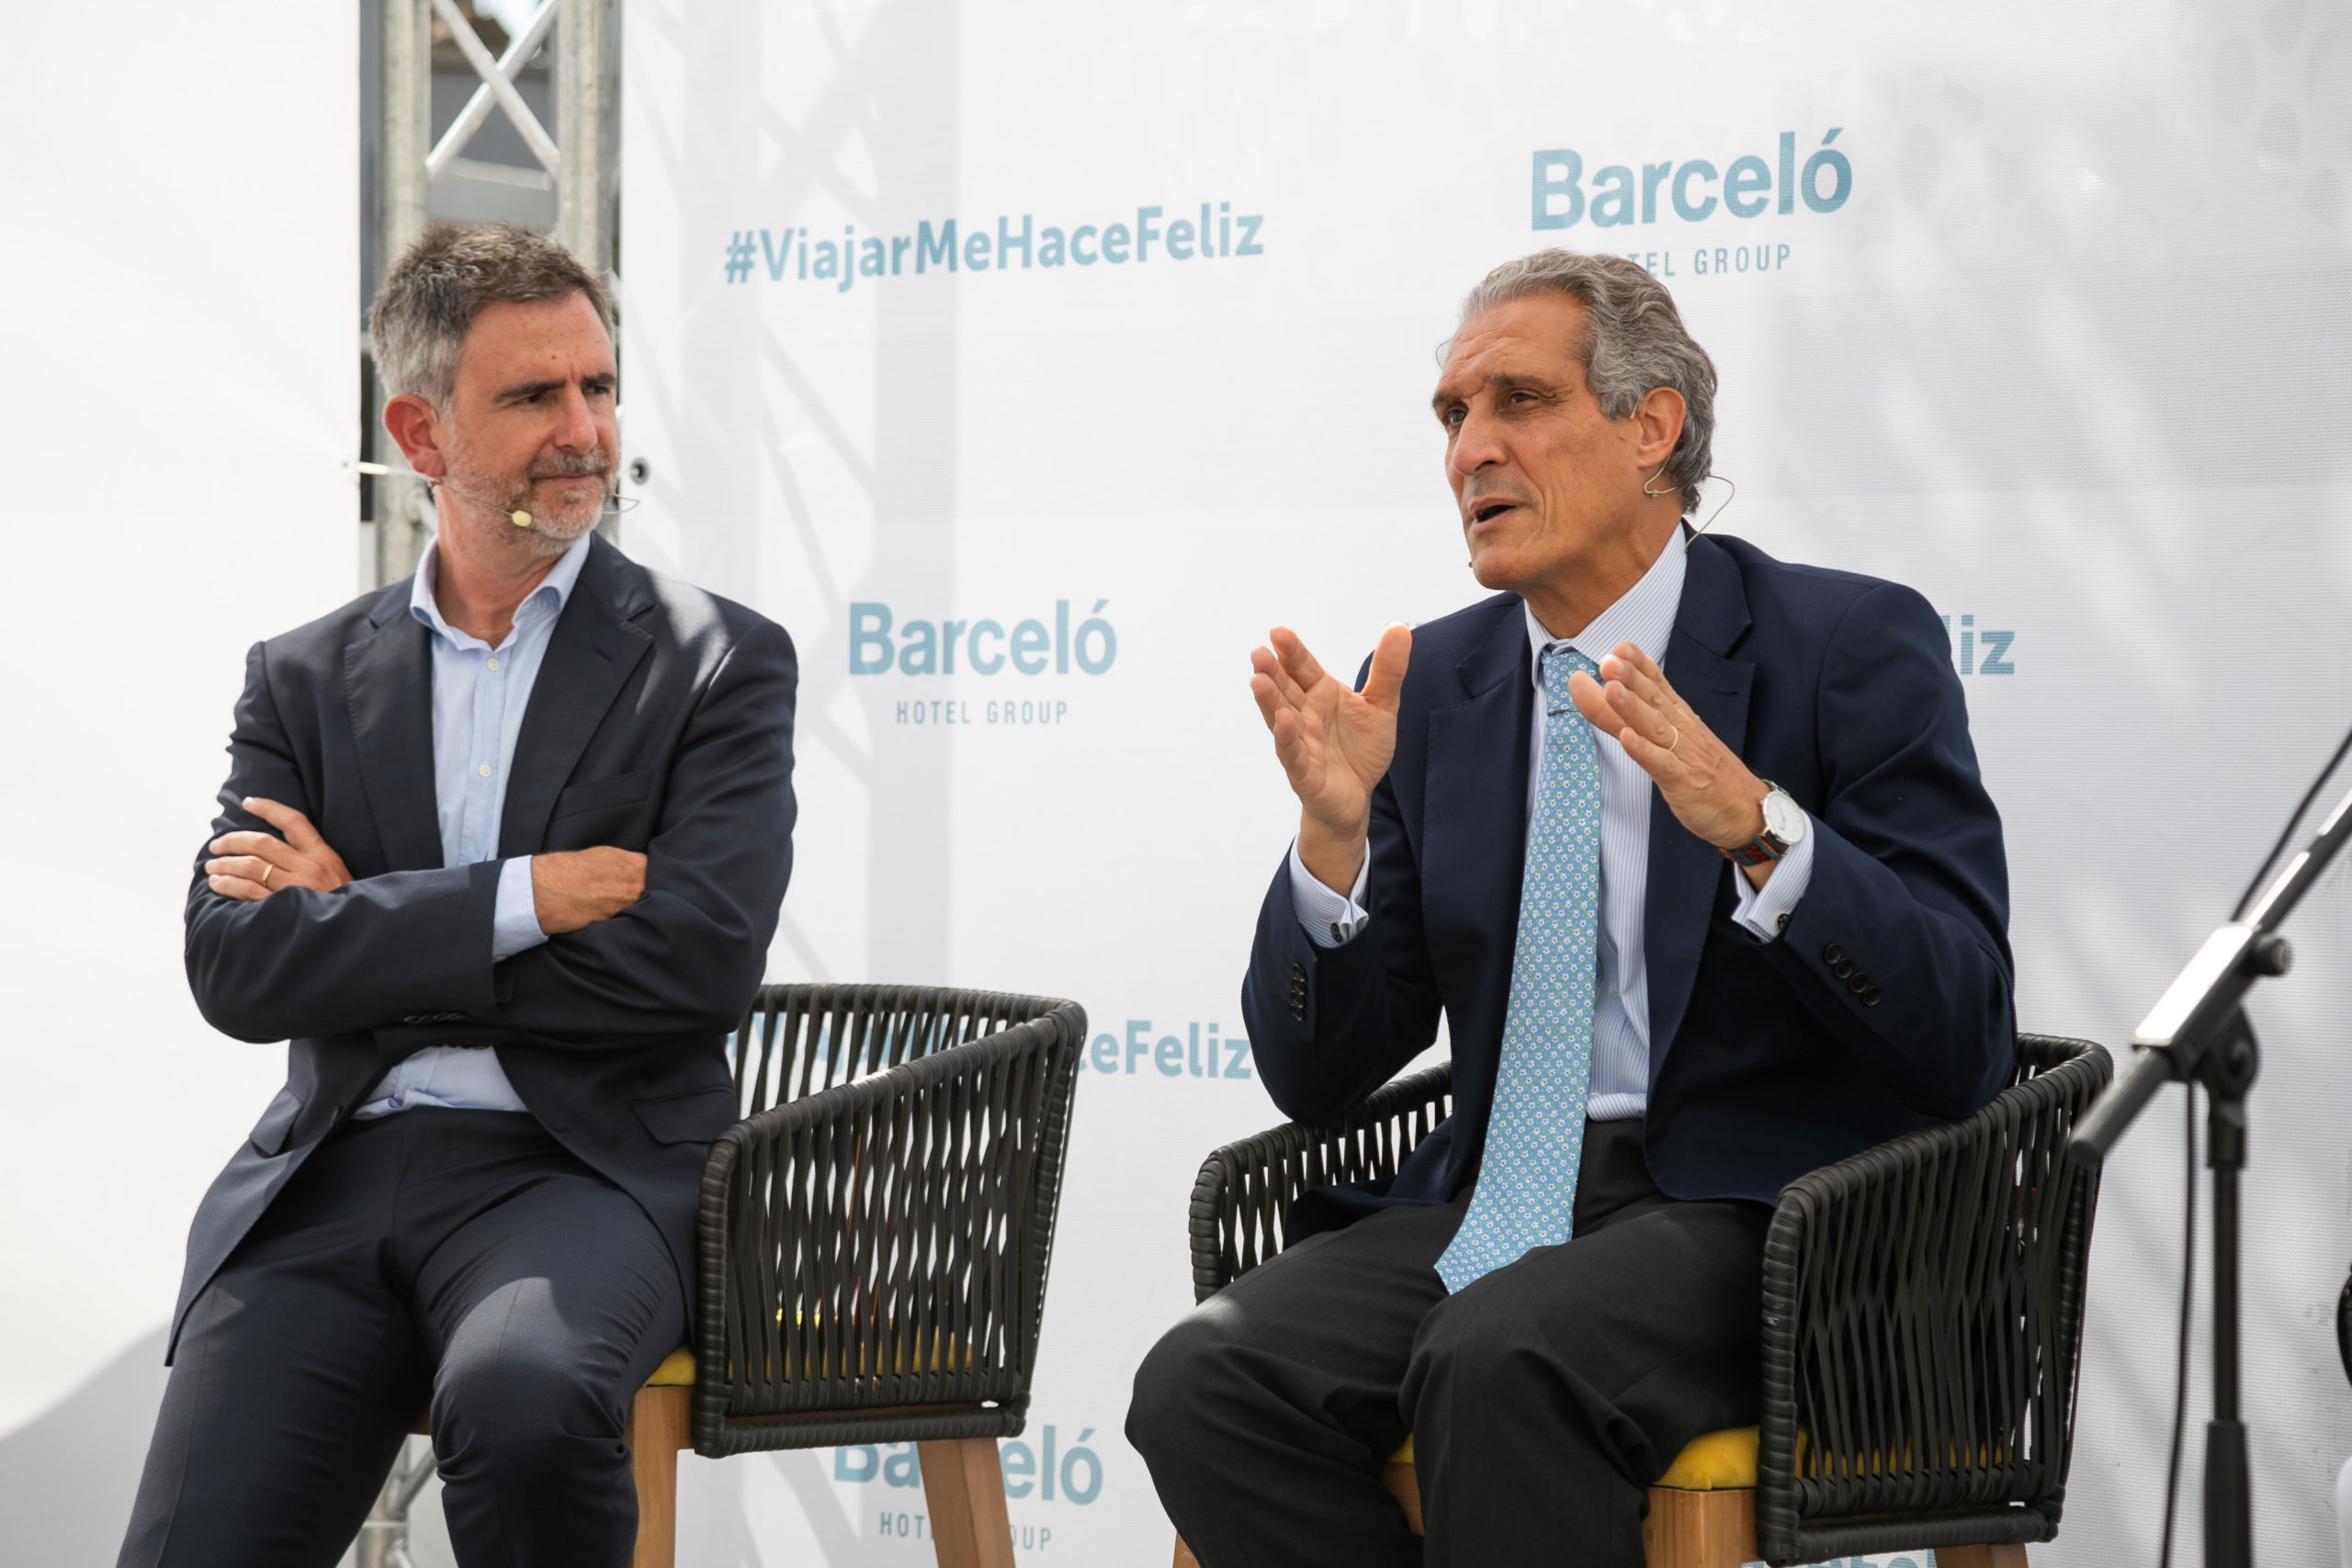 Raúl González, CEO de Barceló Hotel Group, analiza la posición actual de la compañía y las previsiones para la próxima temporada de verano